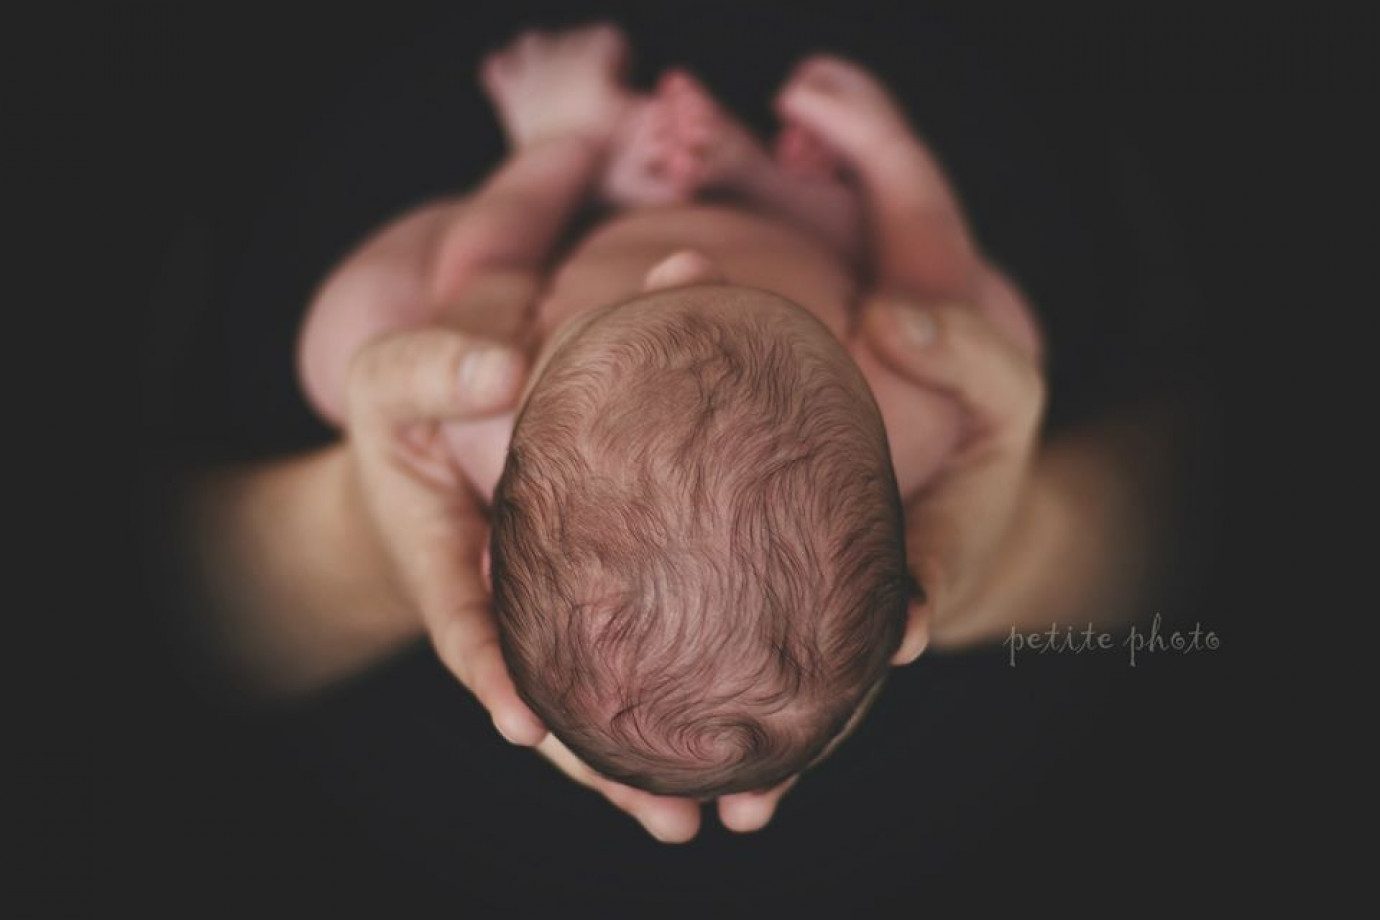 zdjęcia gdynia fotograf agnieszka-drozdz portfolio zdjecia noworodkow sesje noworodkowe niemowlę